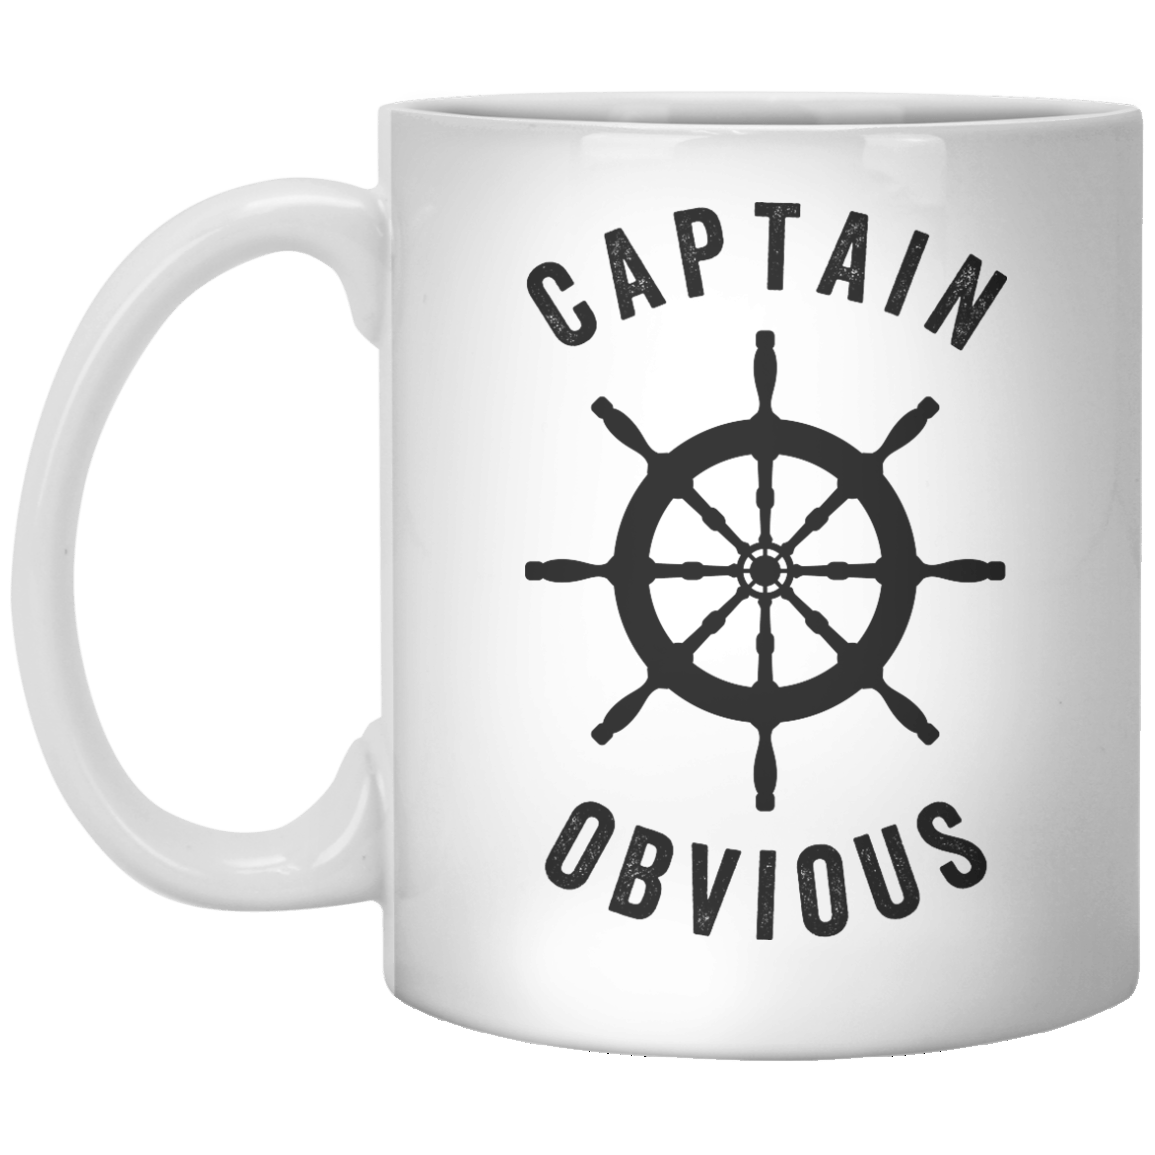 Captain Obsious - Shirtoopia